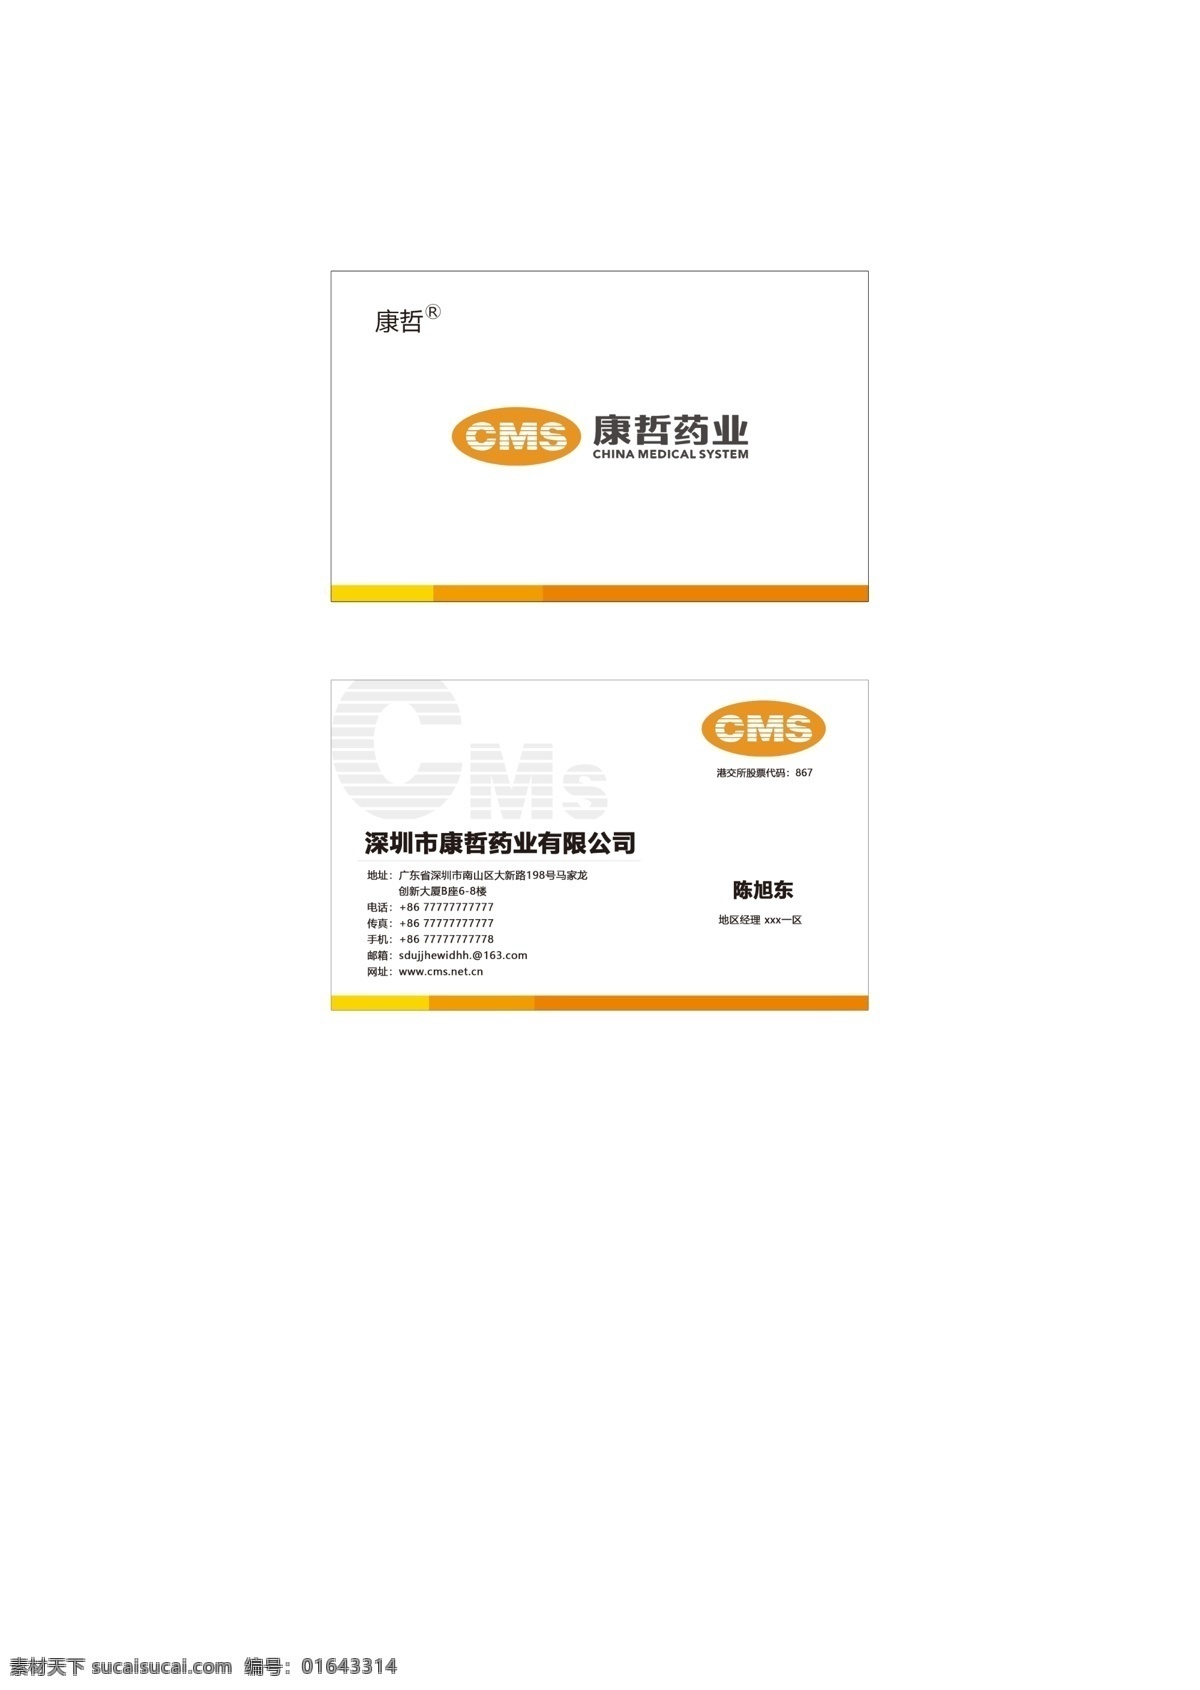 康哲 药业 logo 名片 卡片 名片模板 lolg 企业名片 名片设计